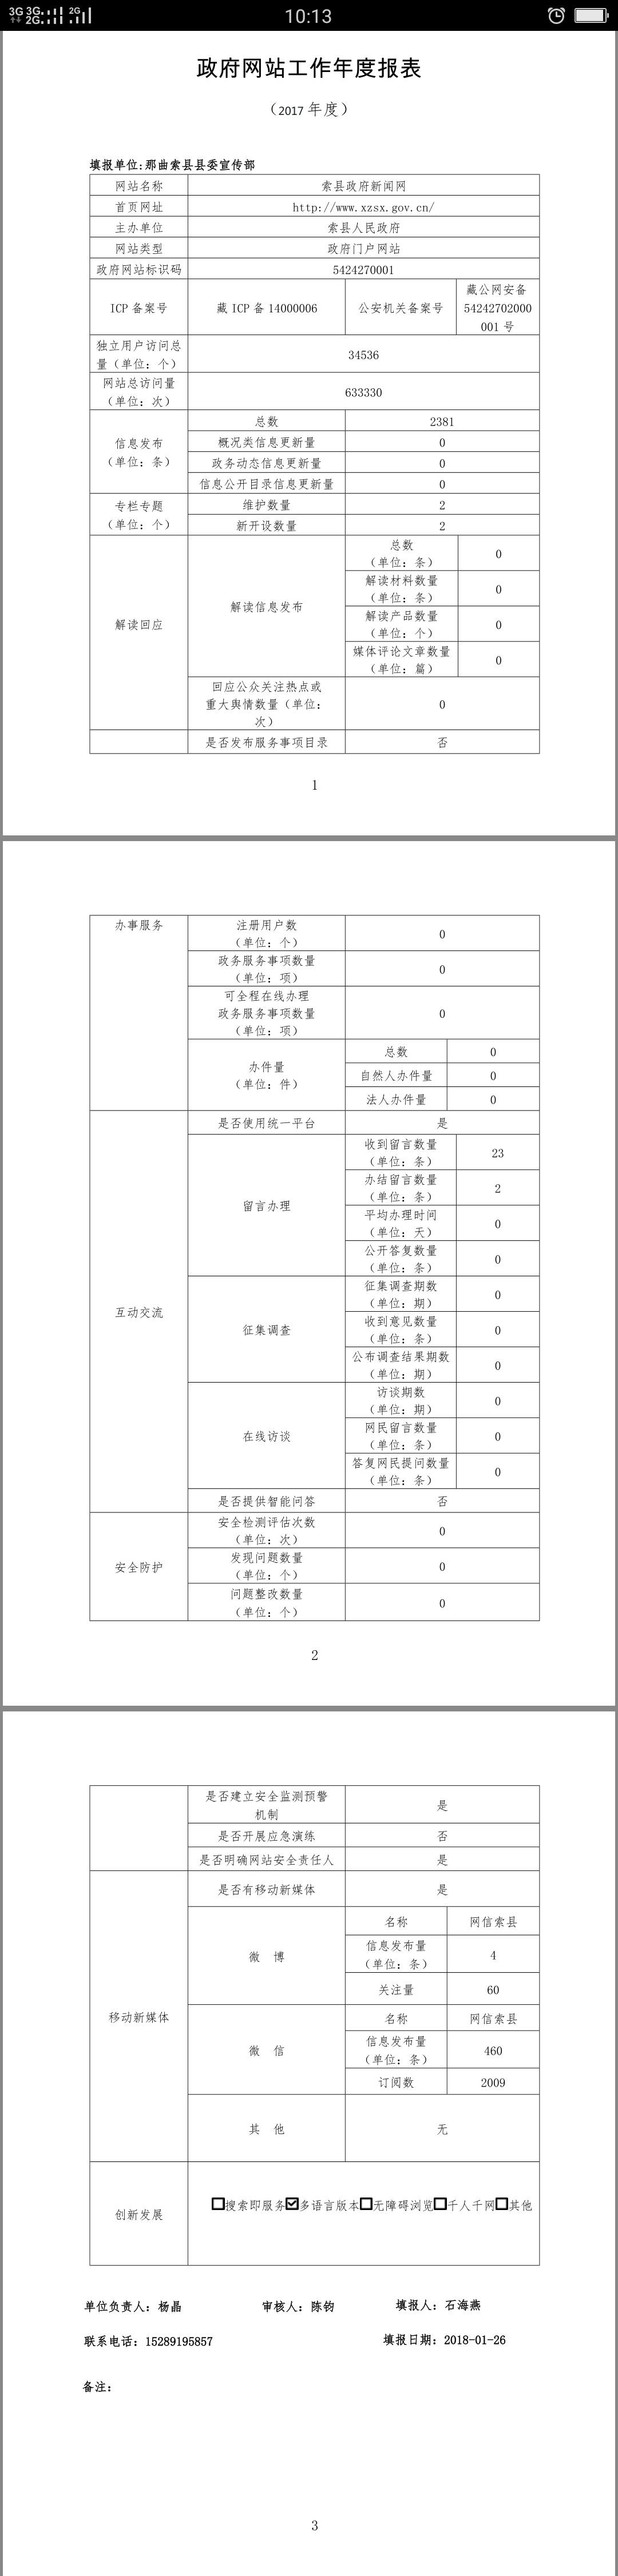 索县政府网站工作年度报表.png